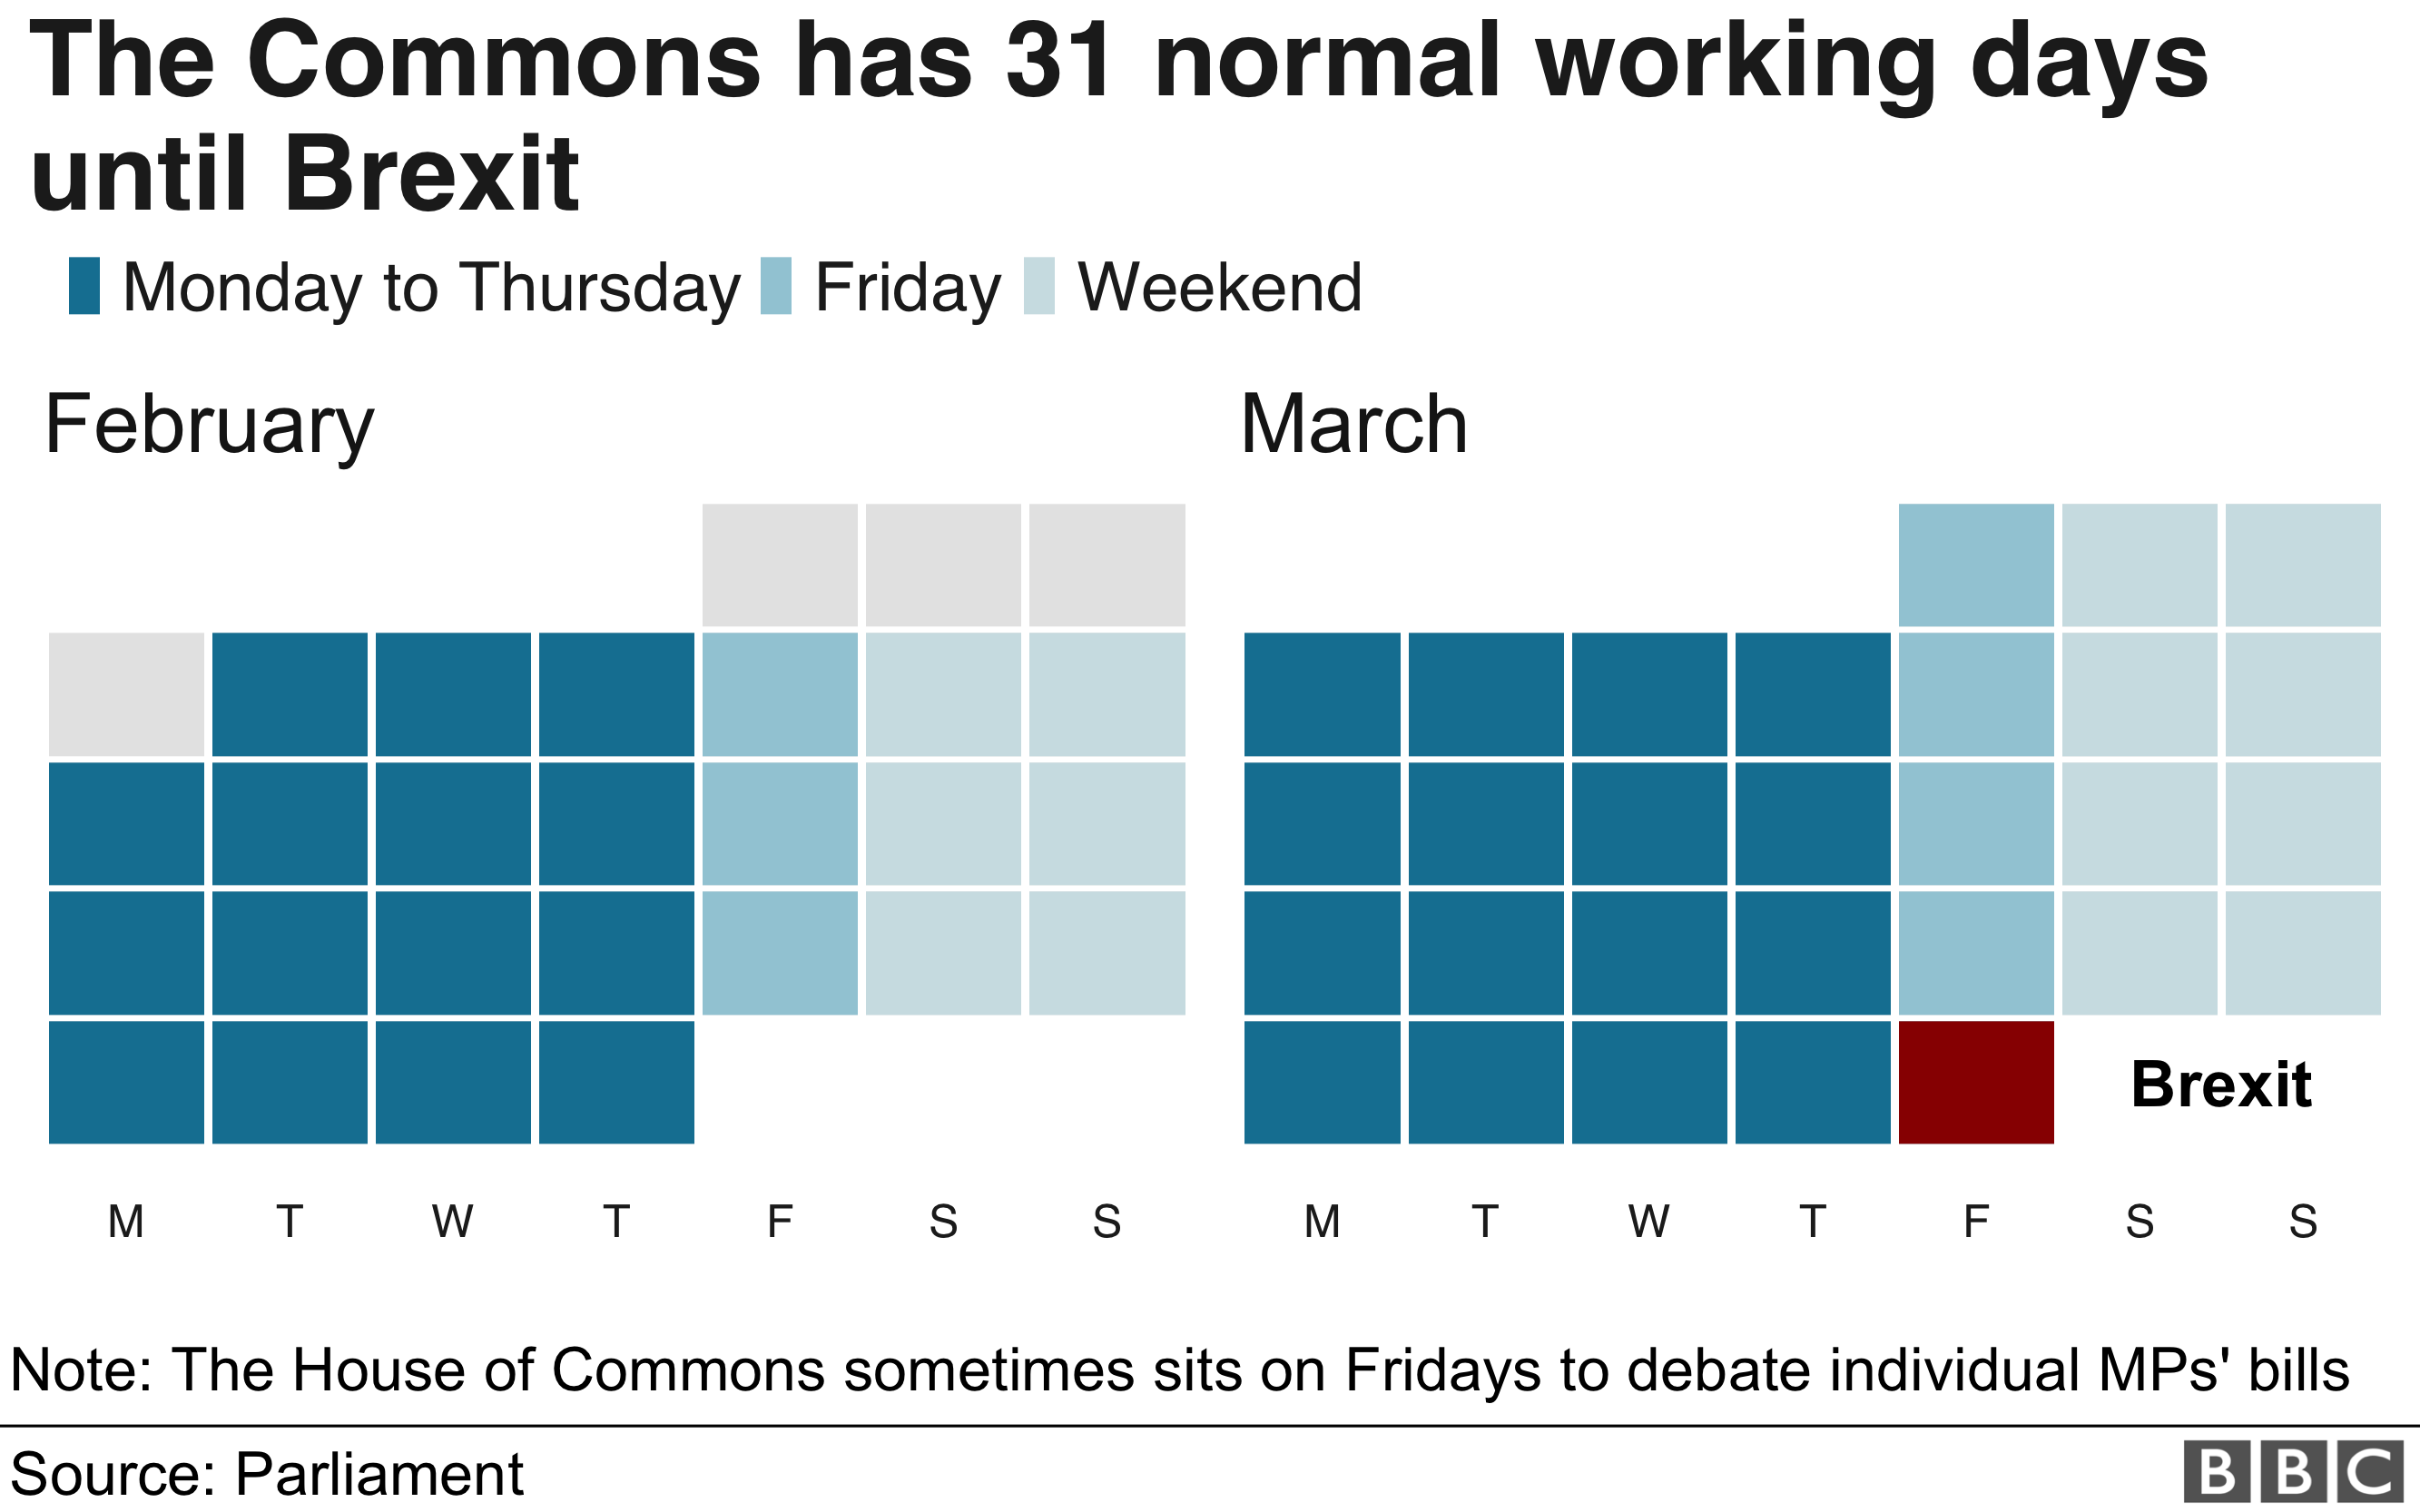 Chart showing Parliamentary calendar